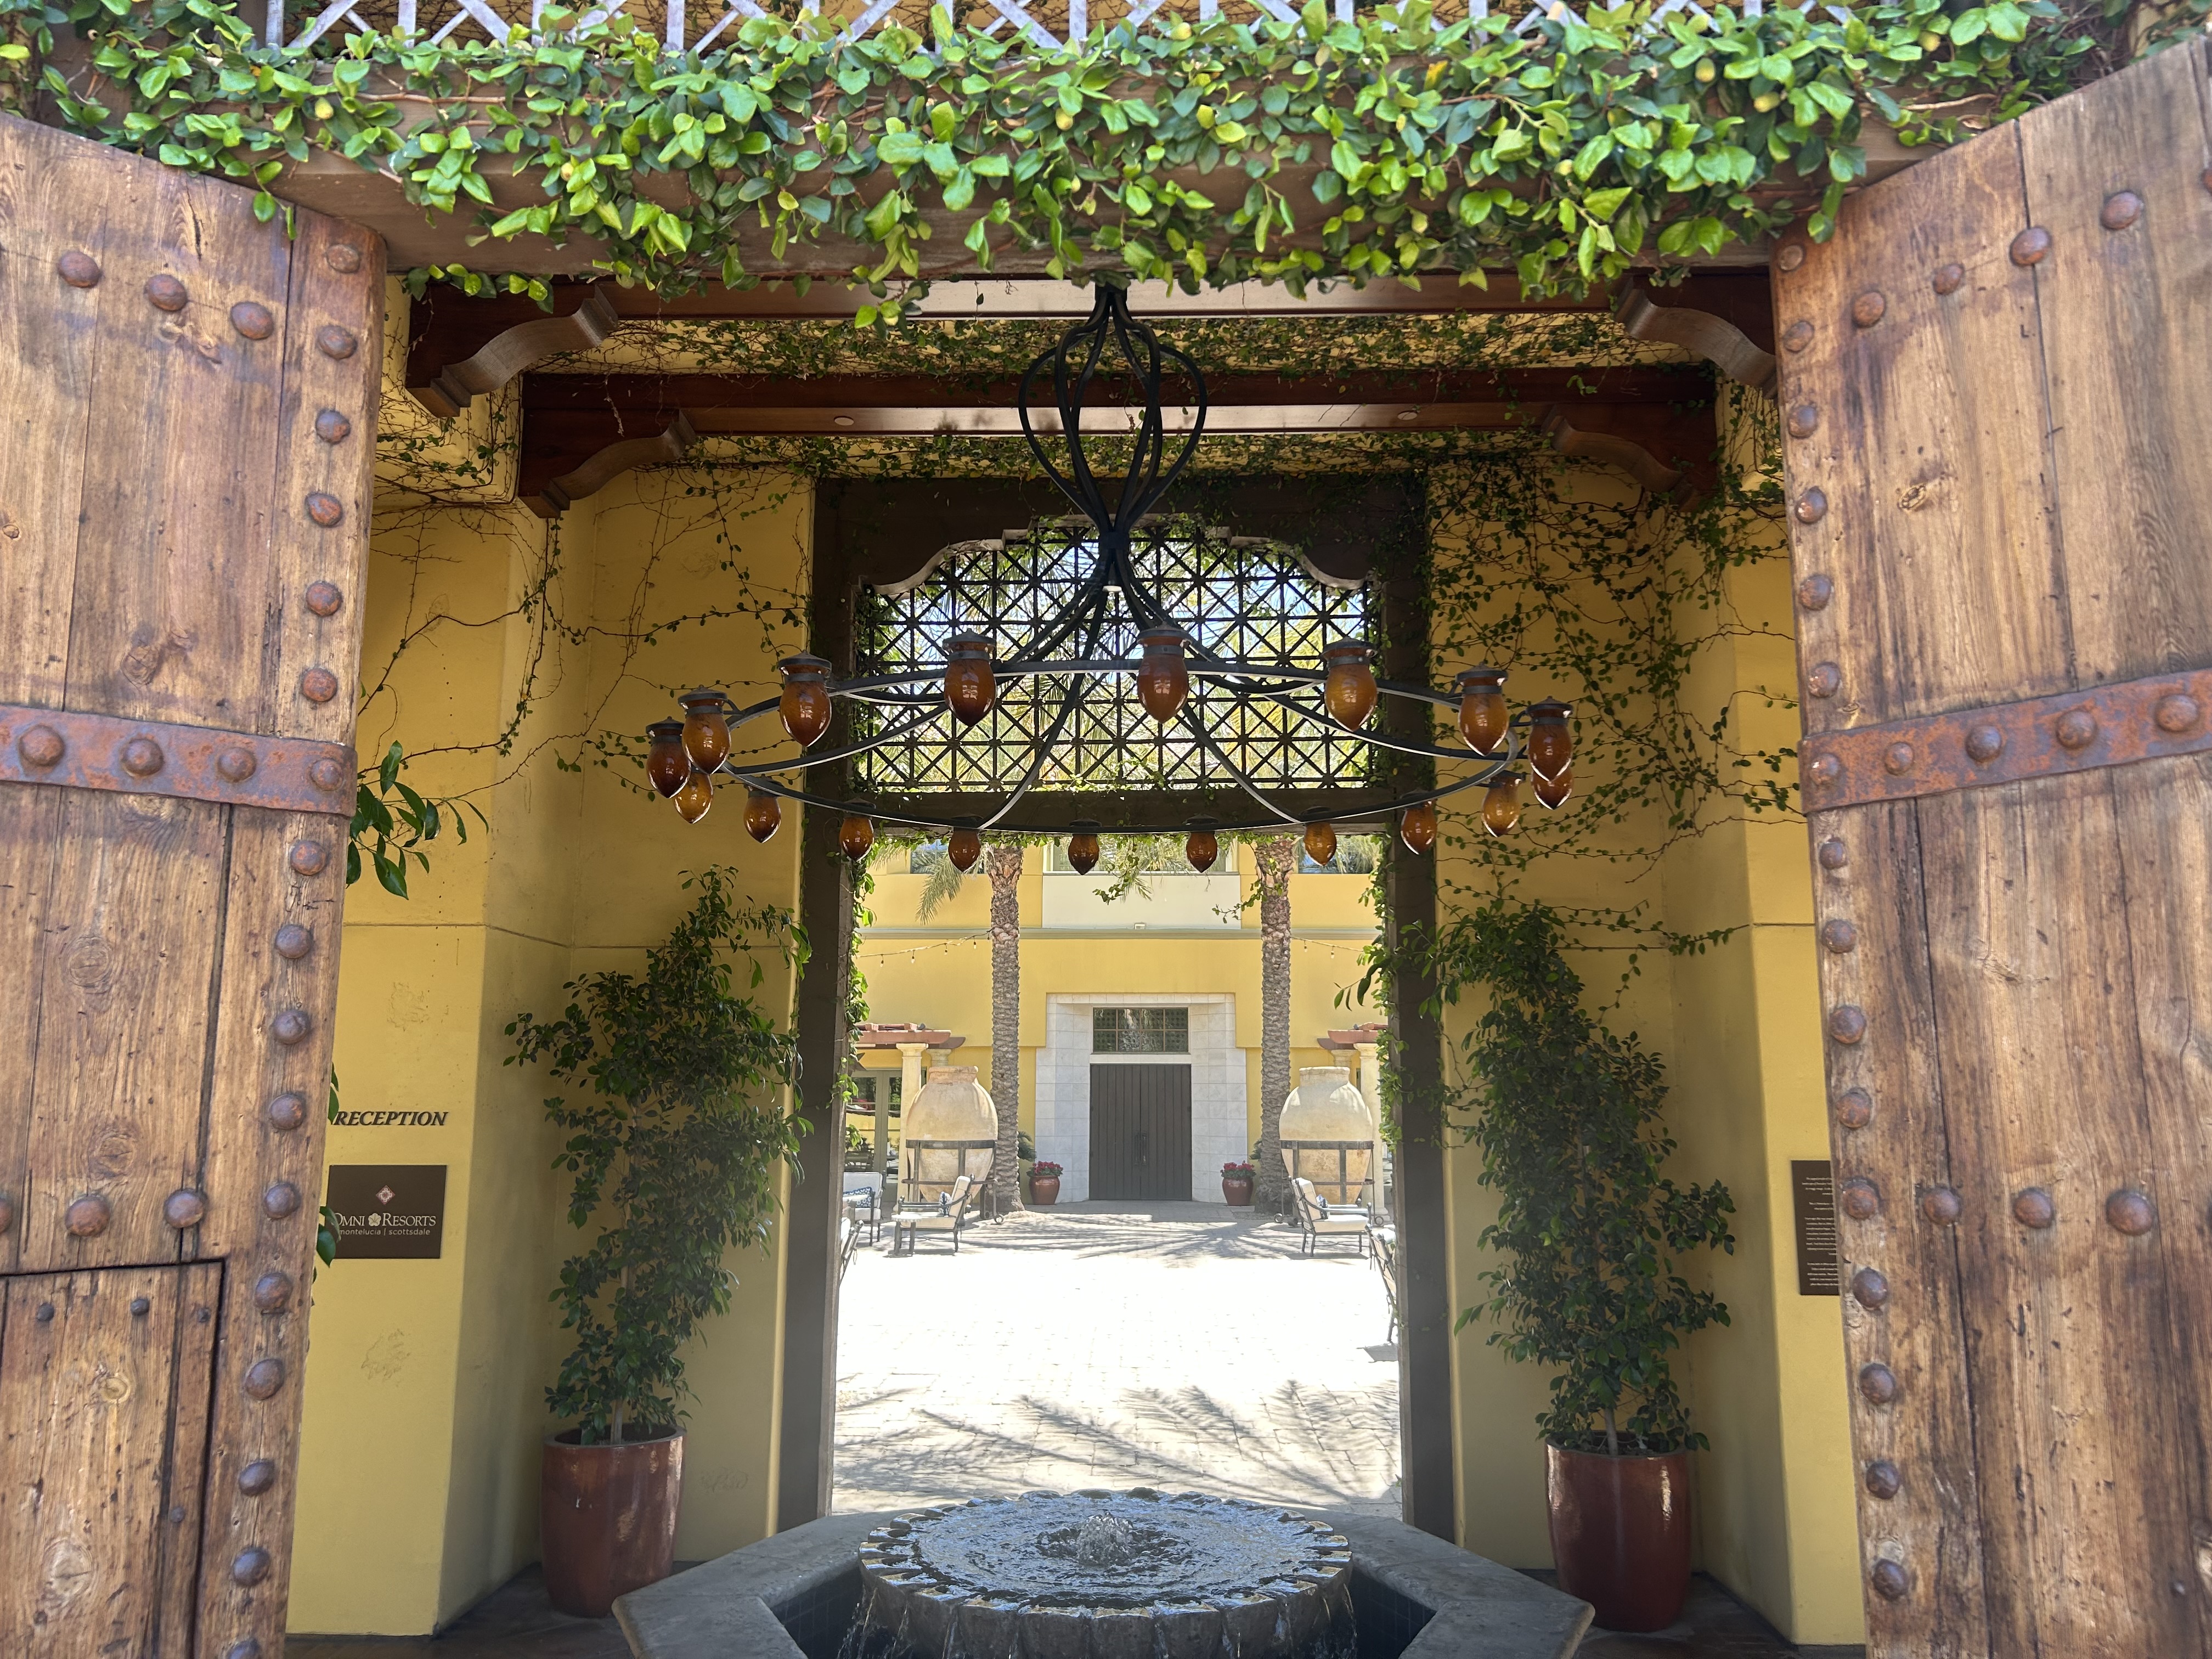 omni resort entrance door